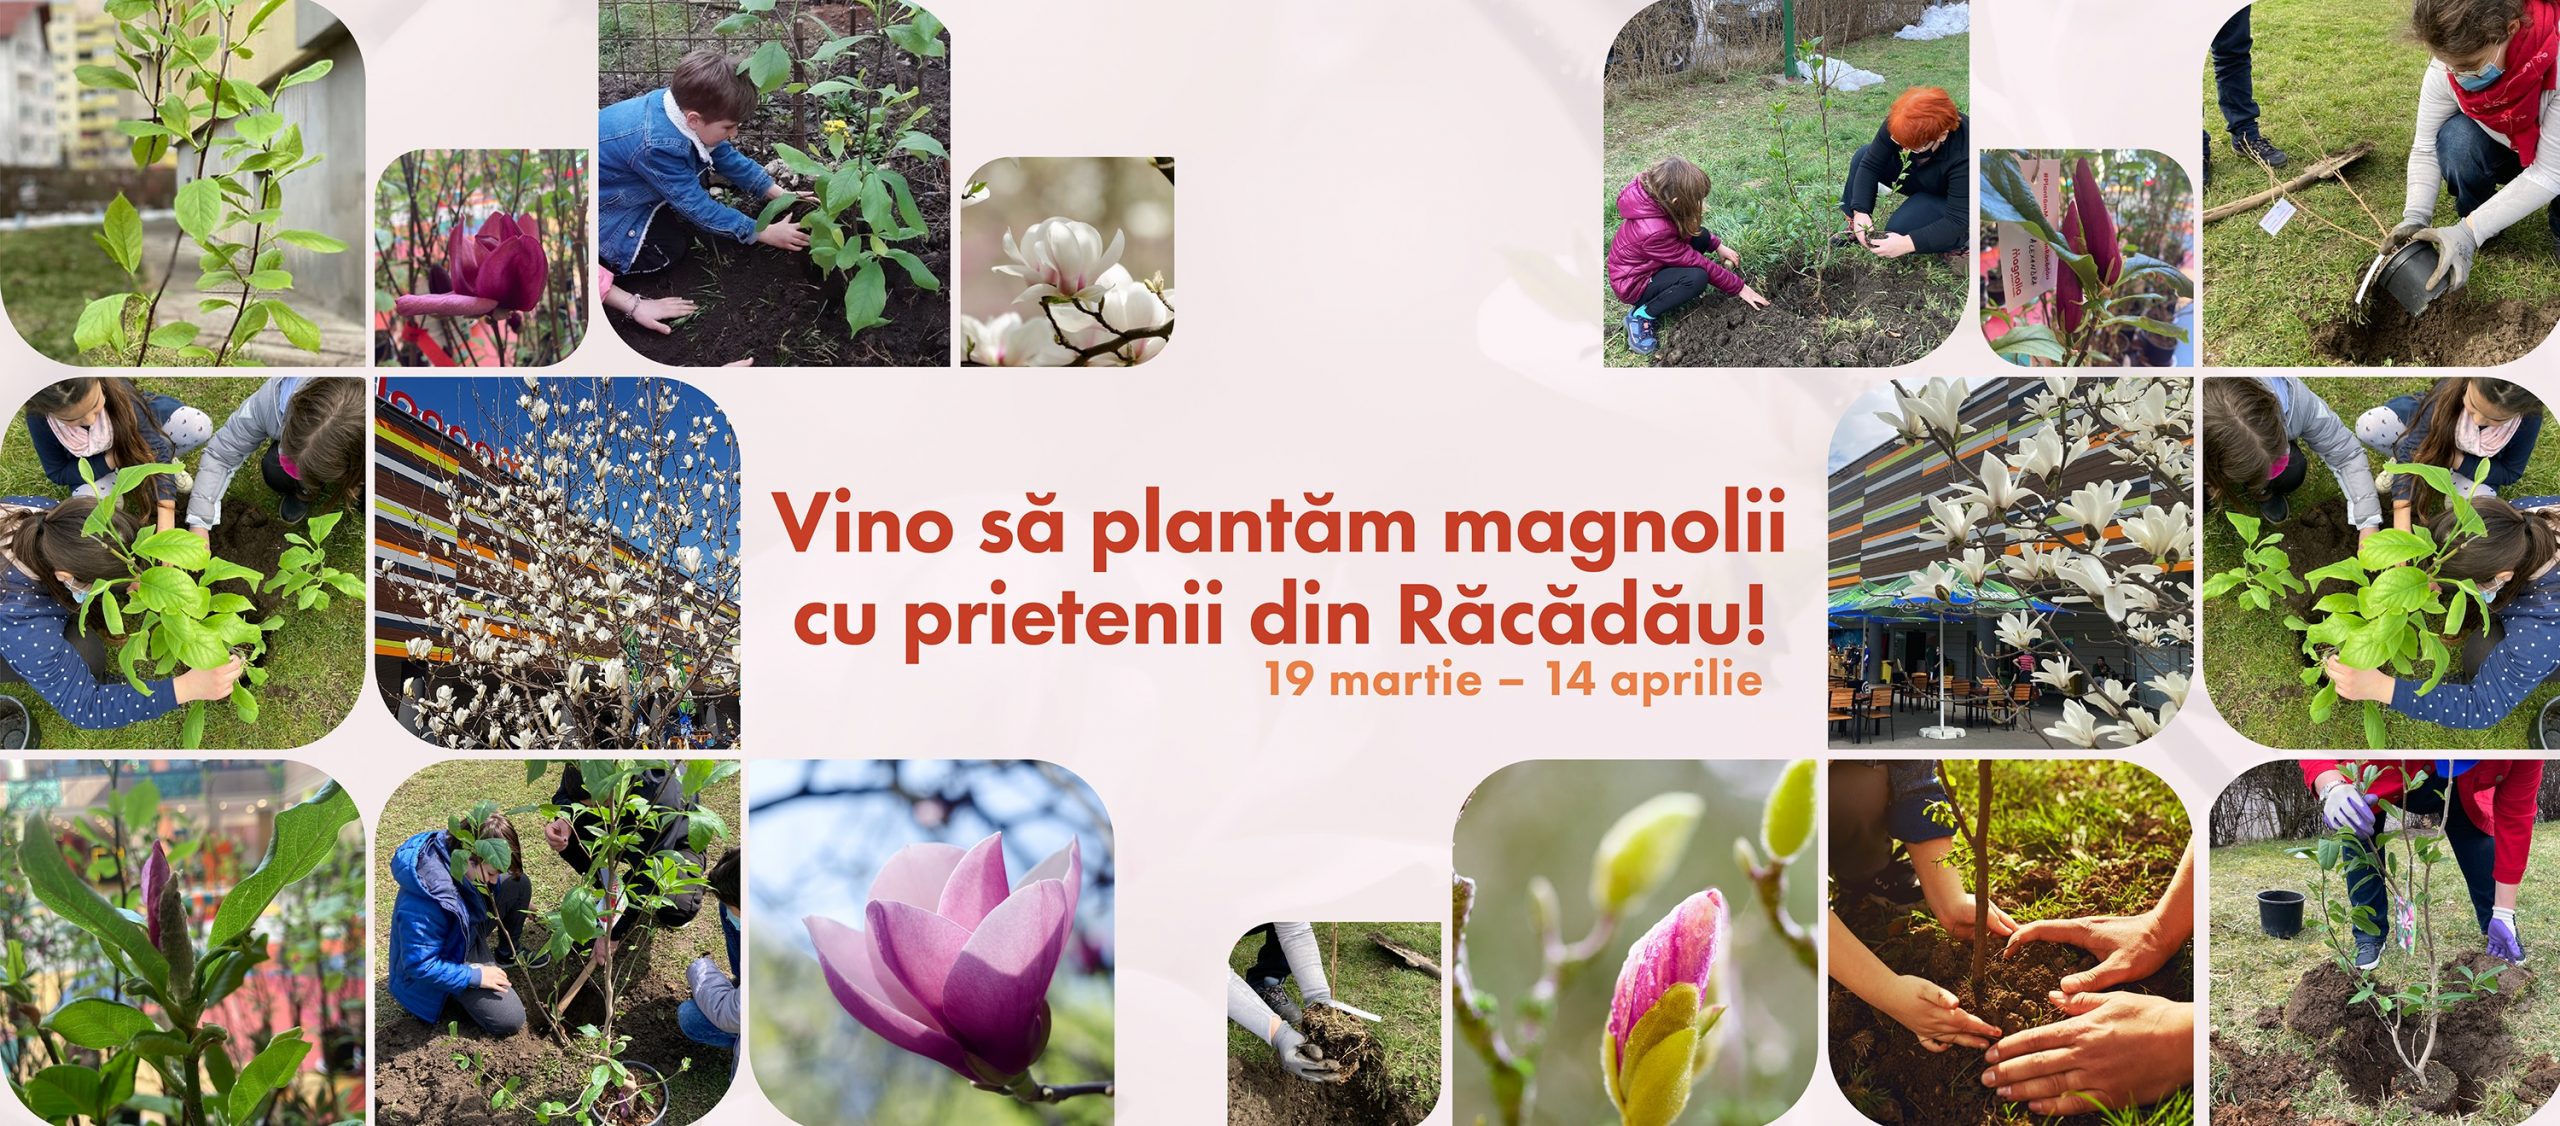 Centrul Comercial Magnolia reia inițiativa de plantare a magnoliilor în Cartierul Răcădău – 120 de magnolii vor fi plantate anul acesta